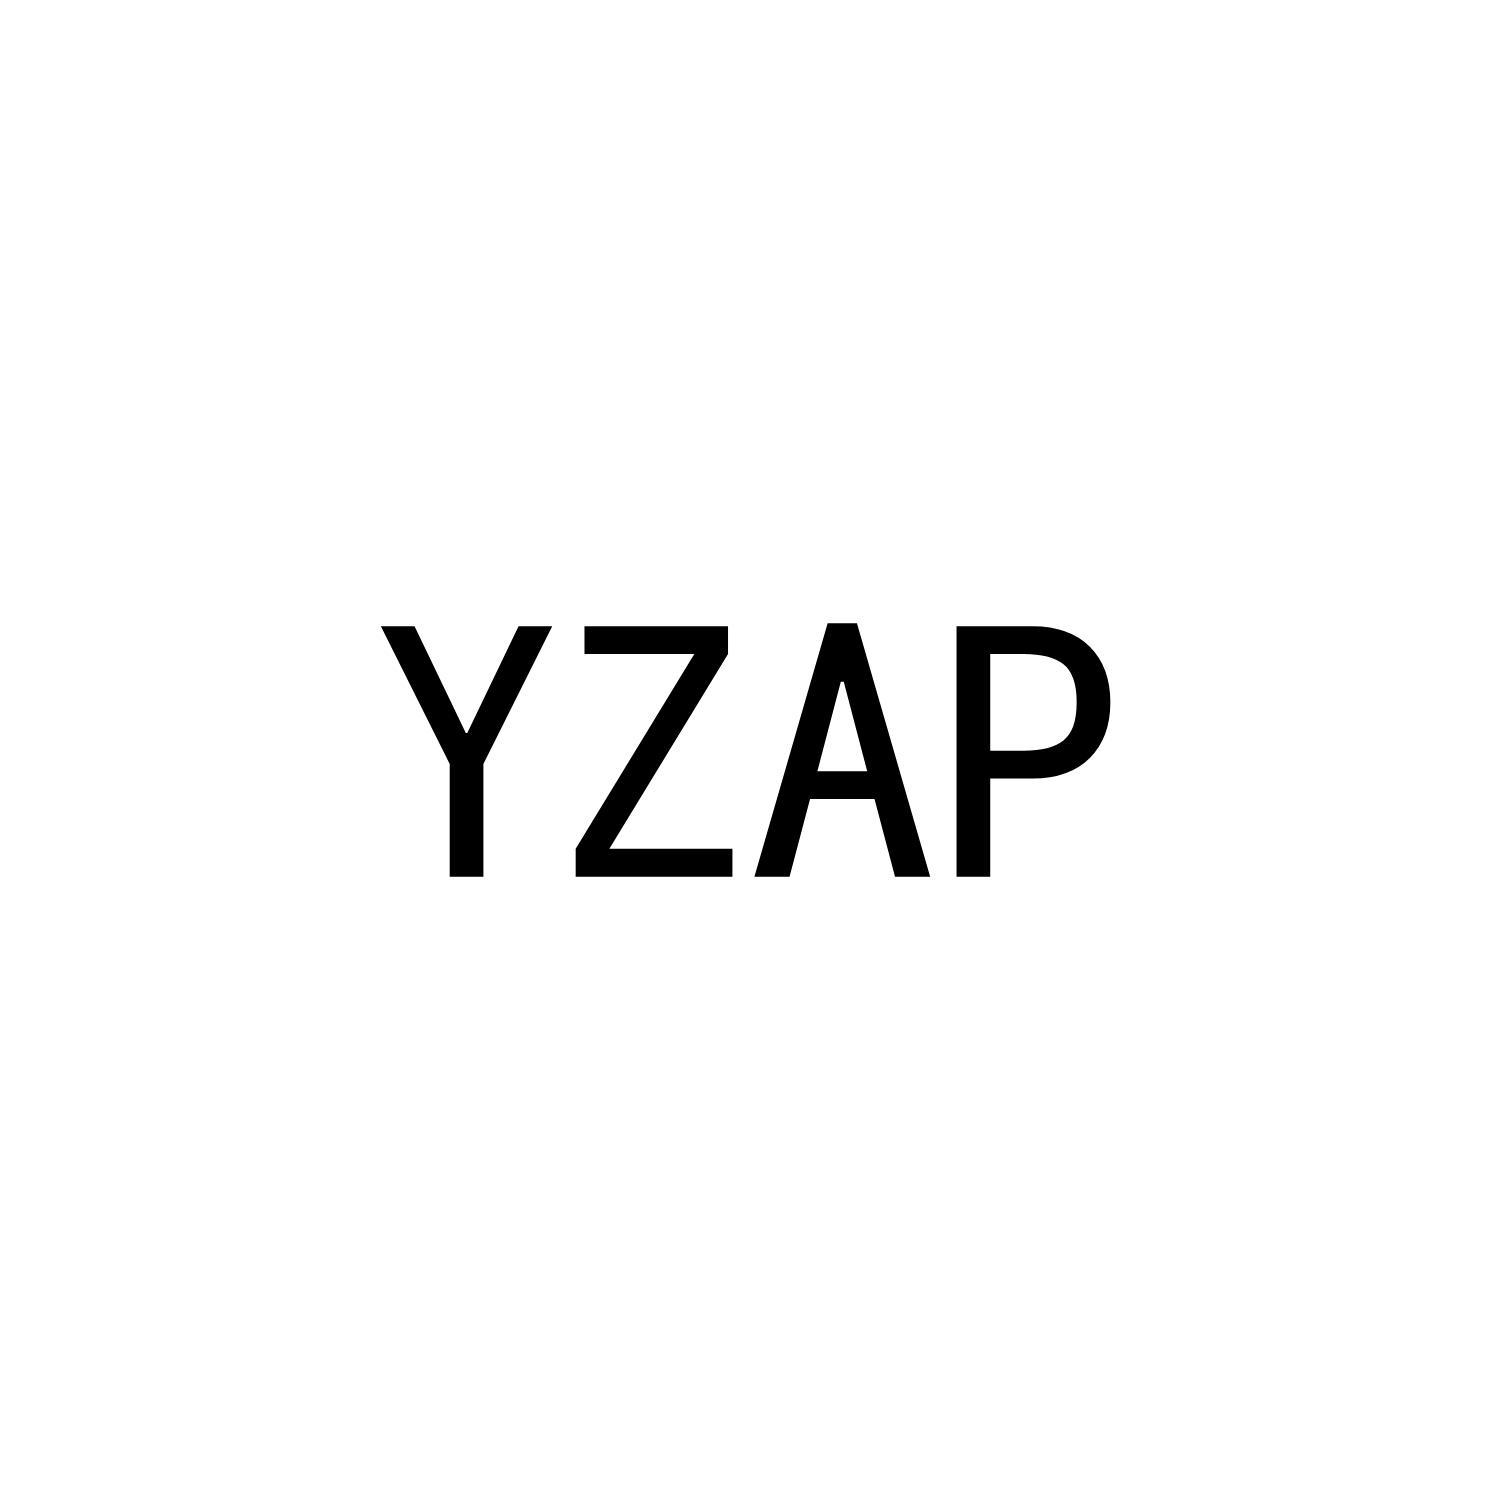 YZAP